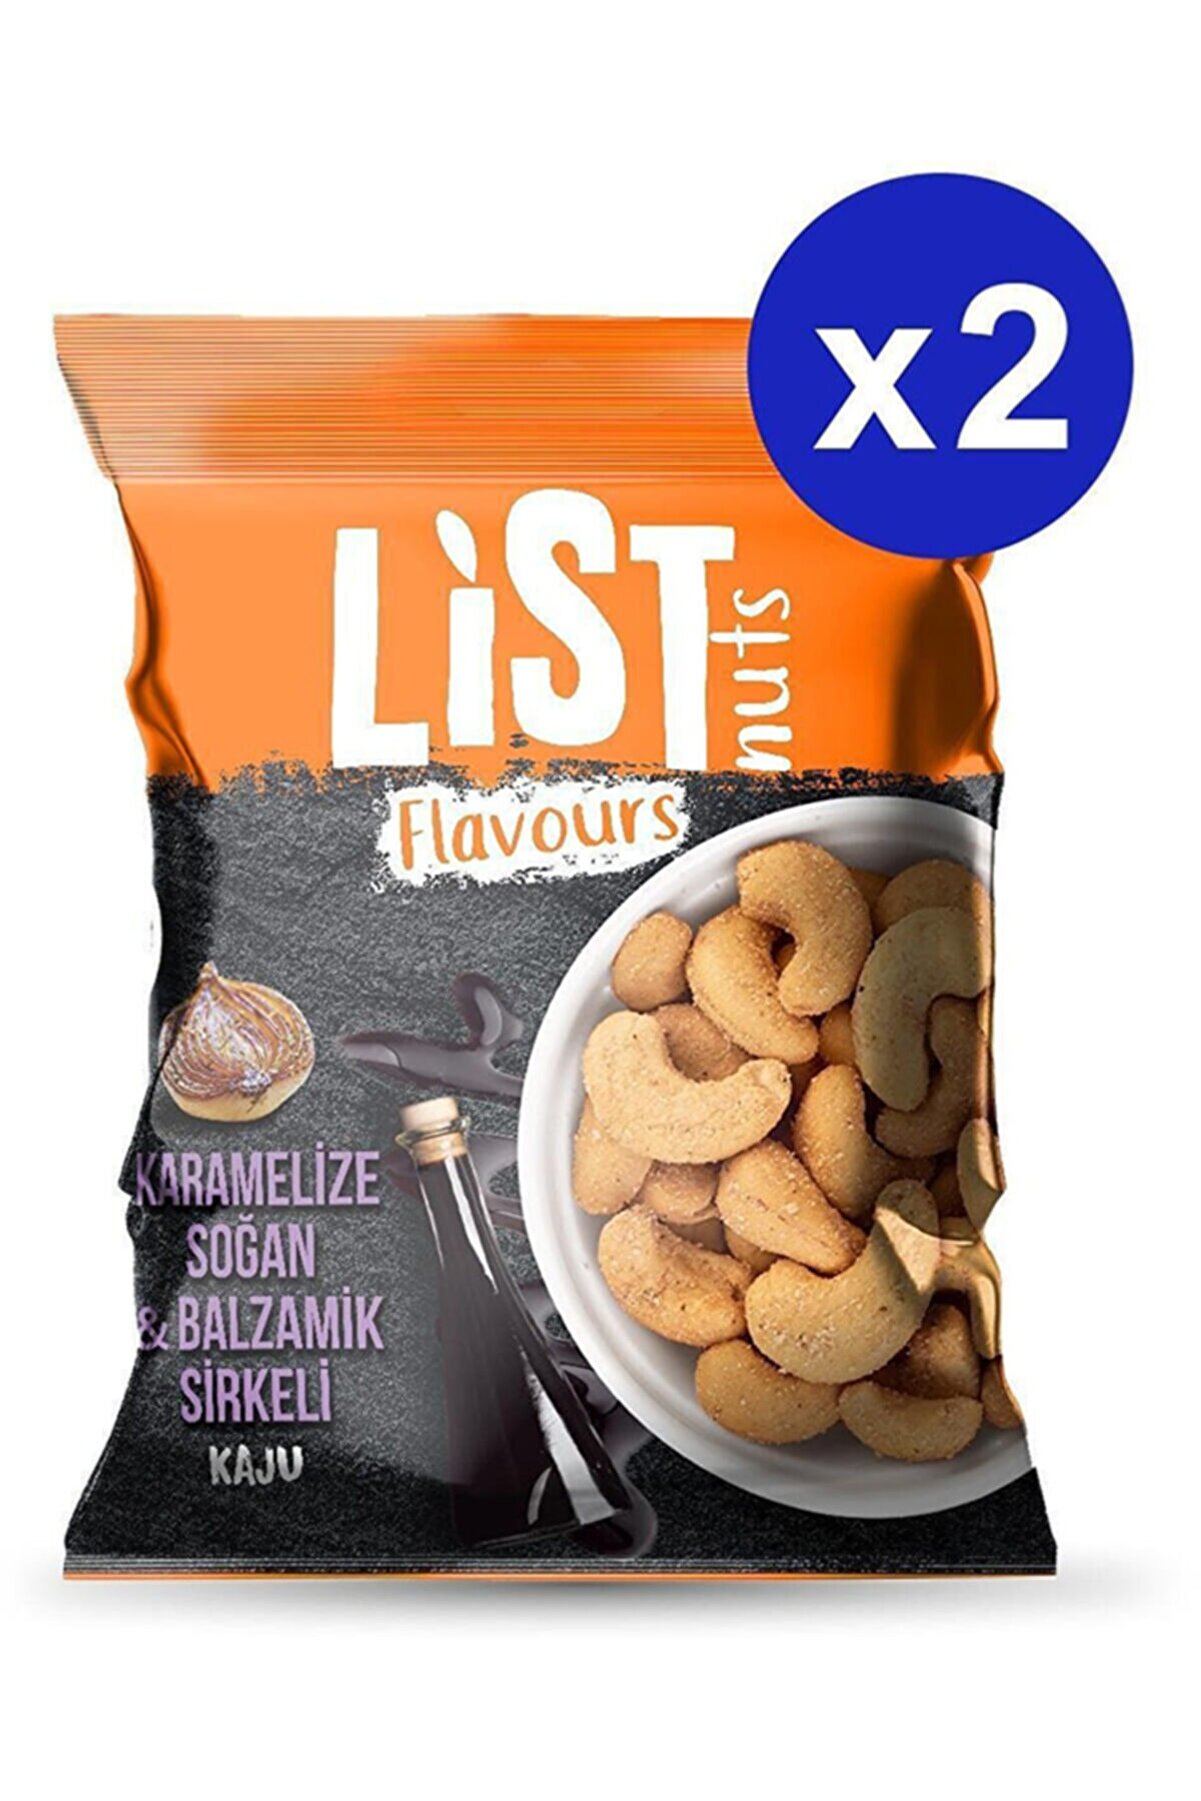 List Flavours List Nuts Flavours Karamelize Soğan & Balzamik Sirkeli Kaju 2x100g